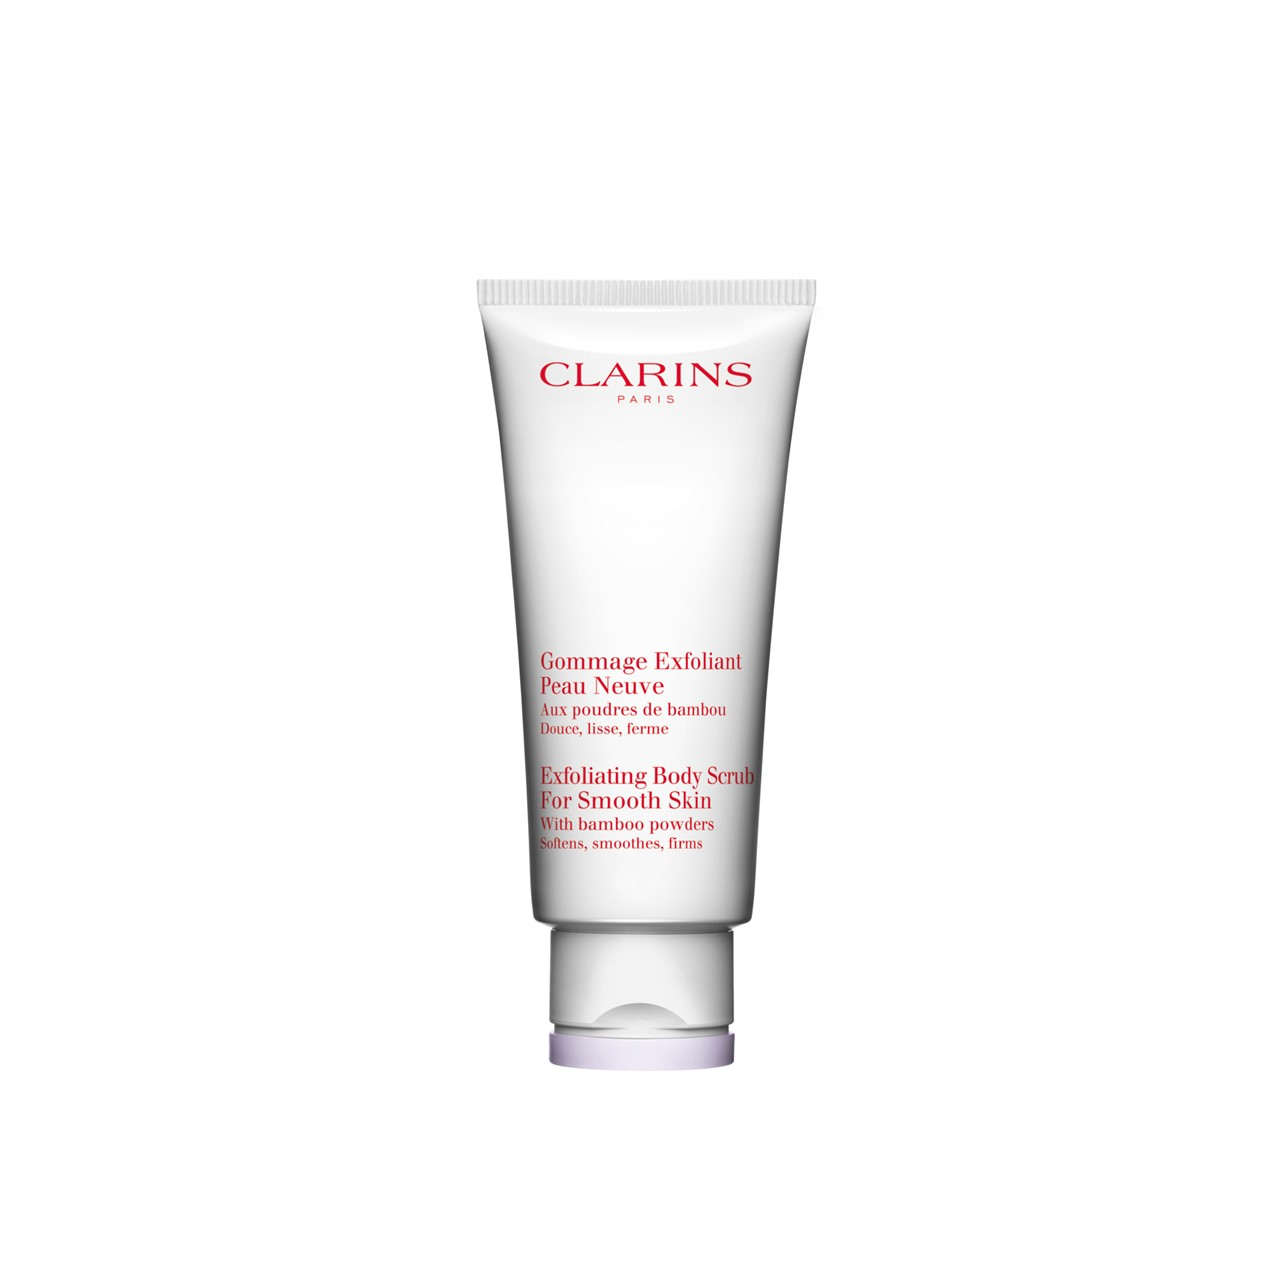 Clarins Exfoliating Body Scrub For Smooth Skin 200ml (6.76fl oz)